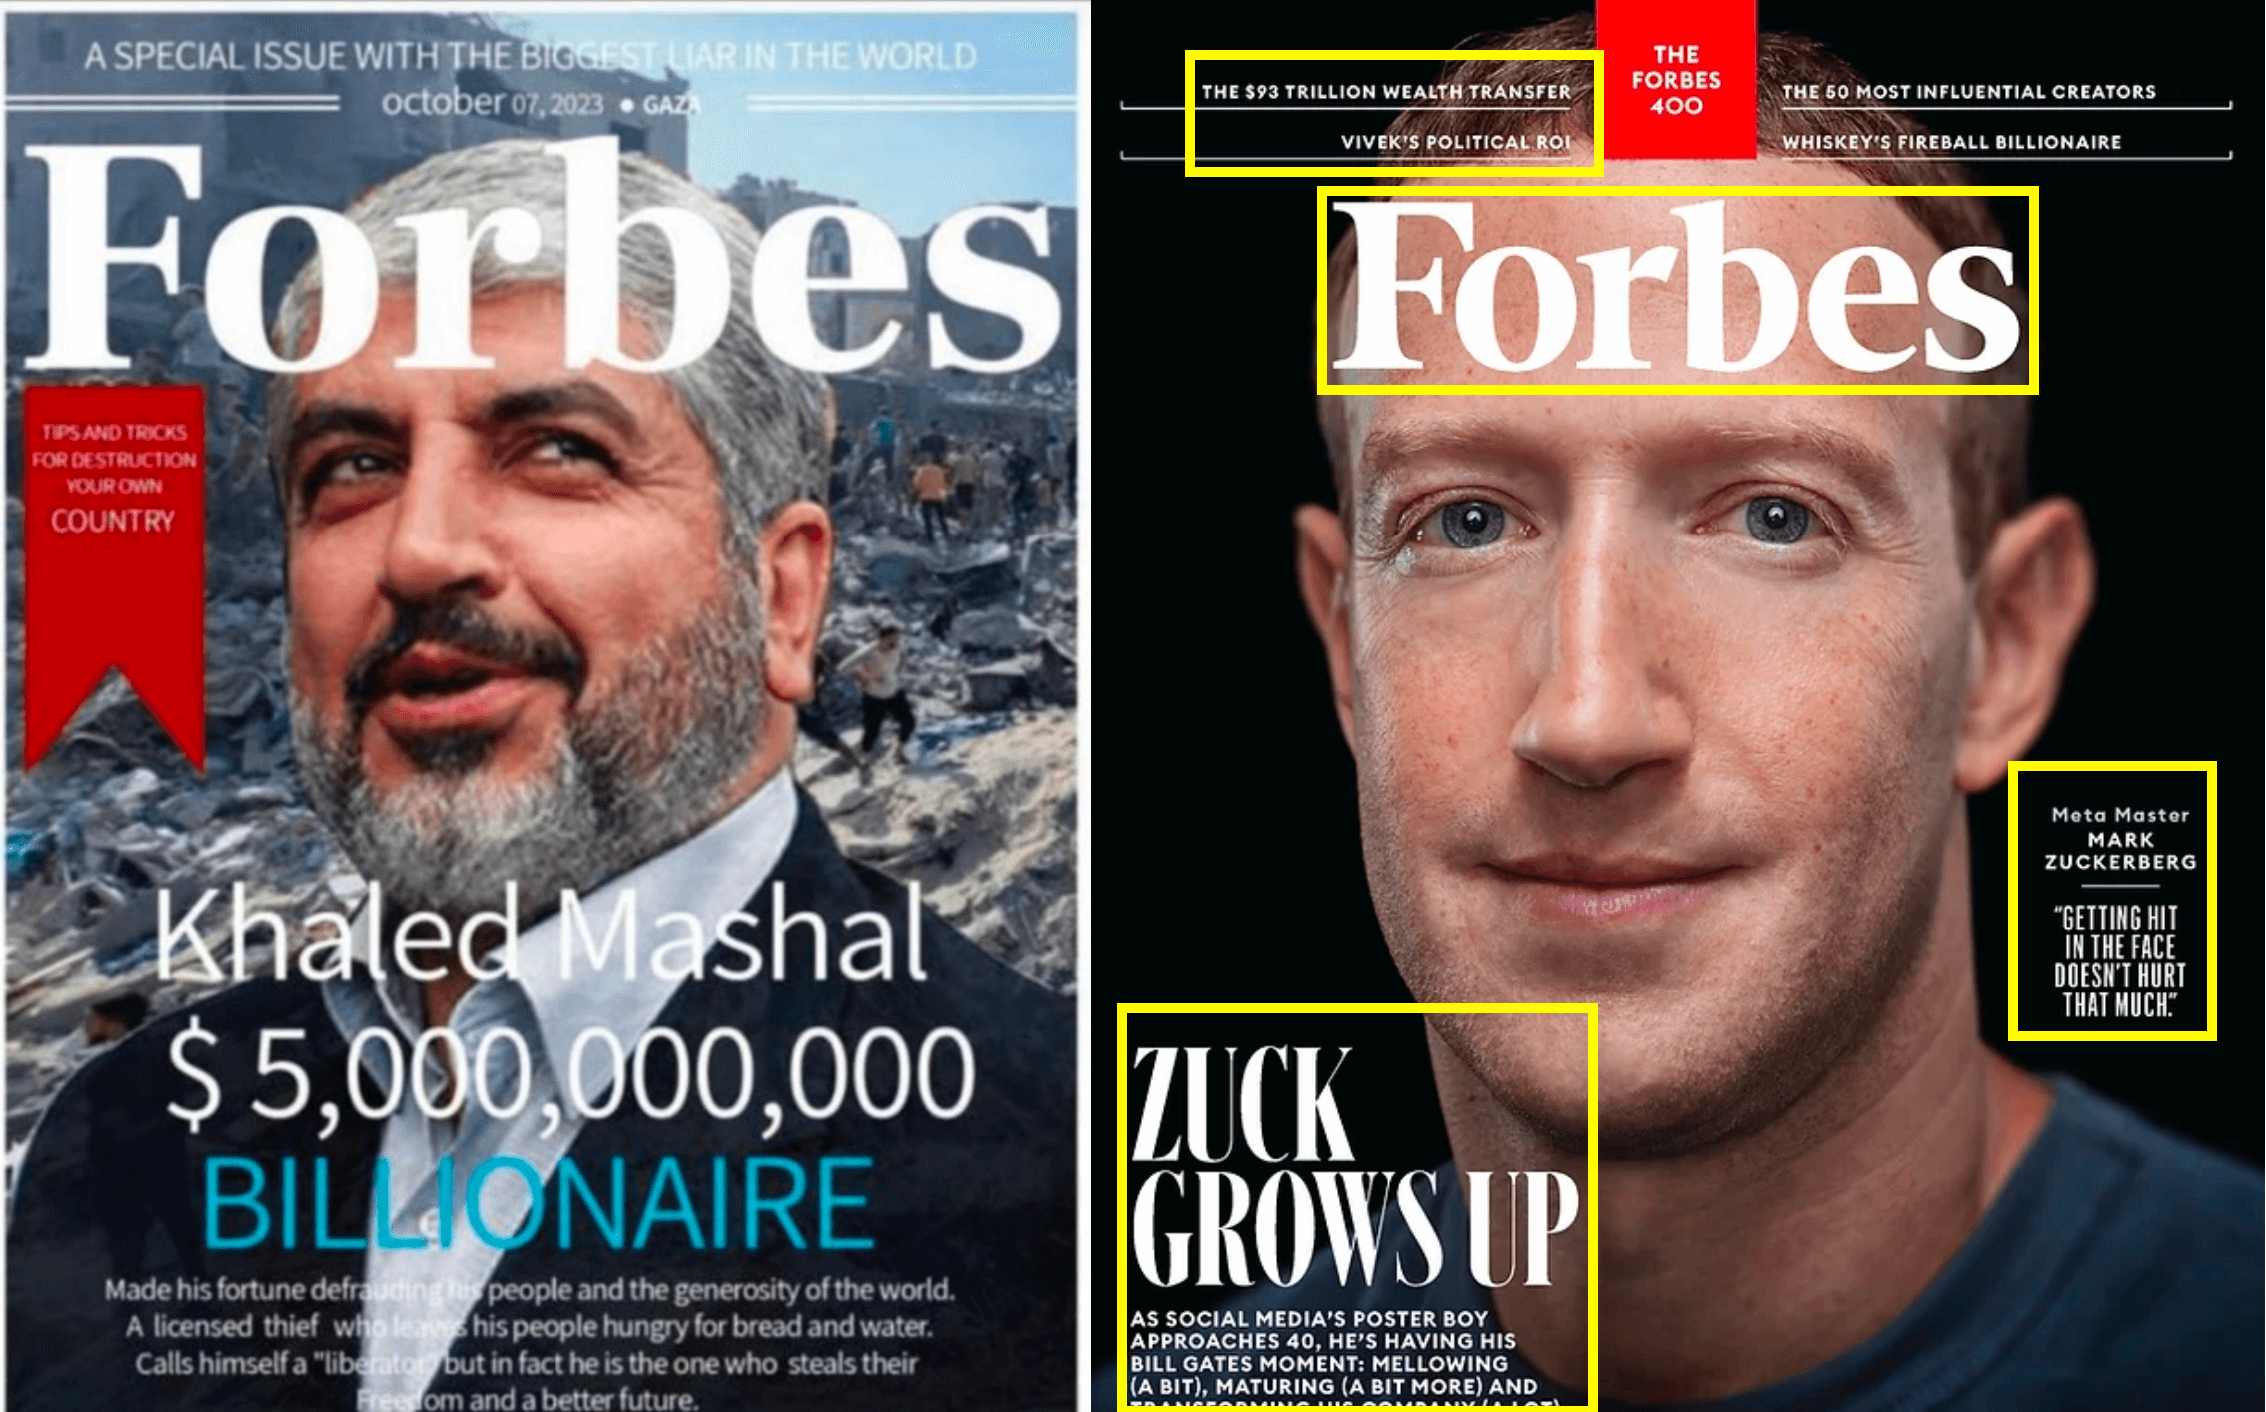 Ein Vergleich des gefälschten Covers (links) mit der aktuellen Ausgabe von Forbes (rechts) zeigt, dass das echte Forbes-Cover anders gestaltet ist 